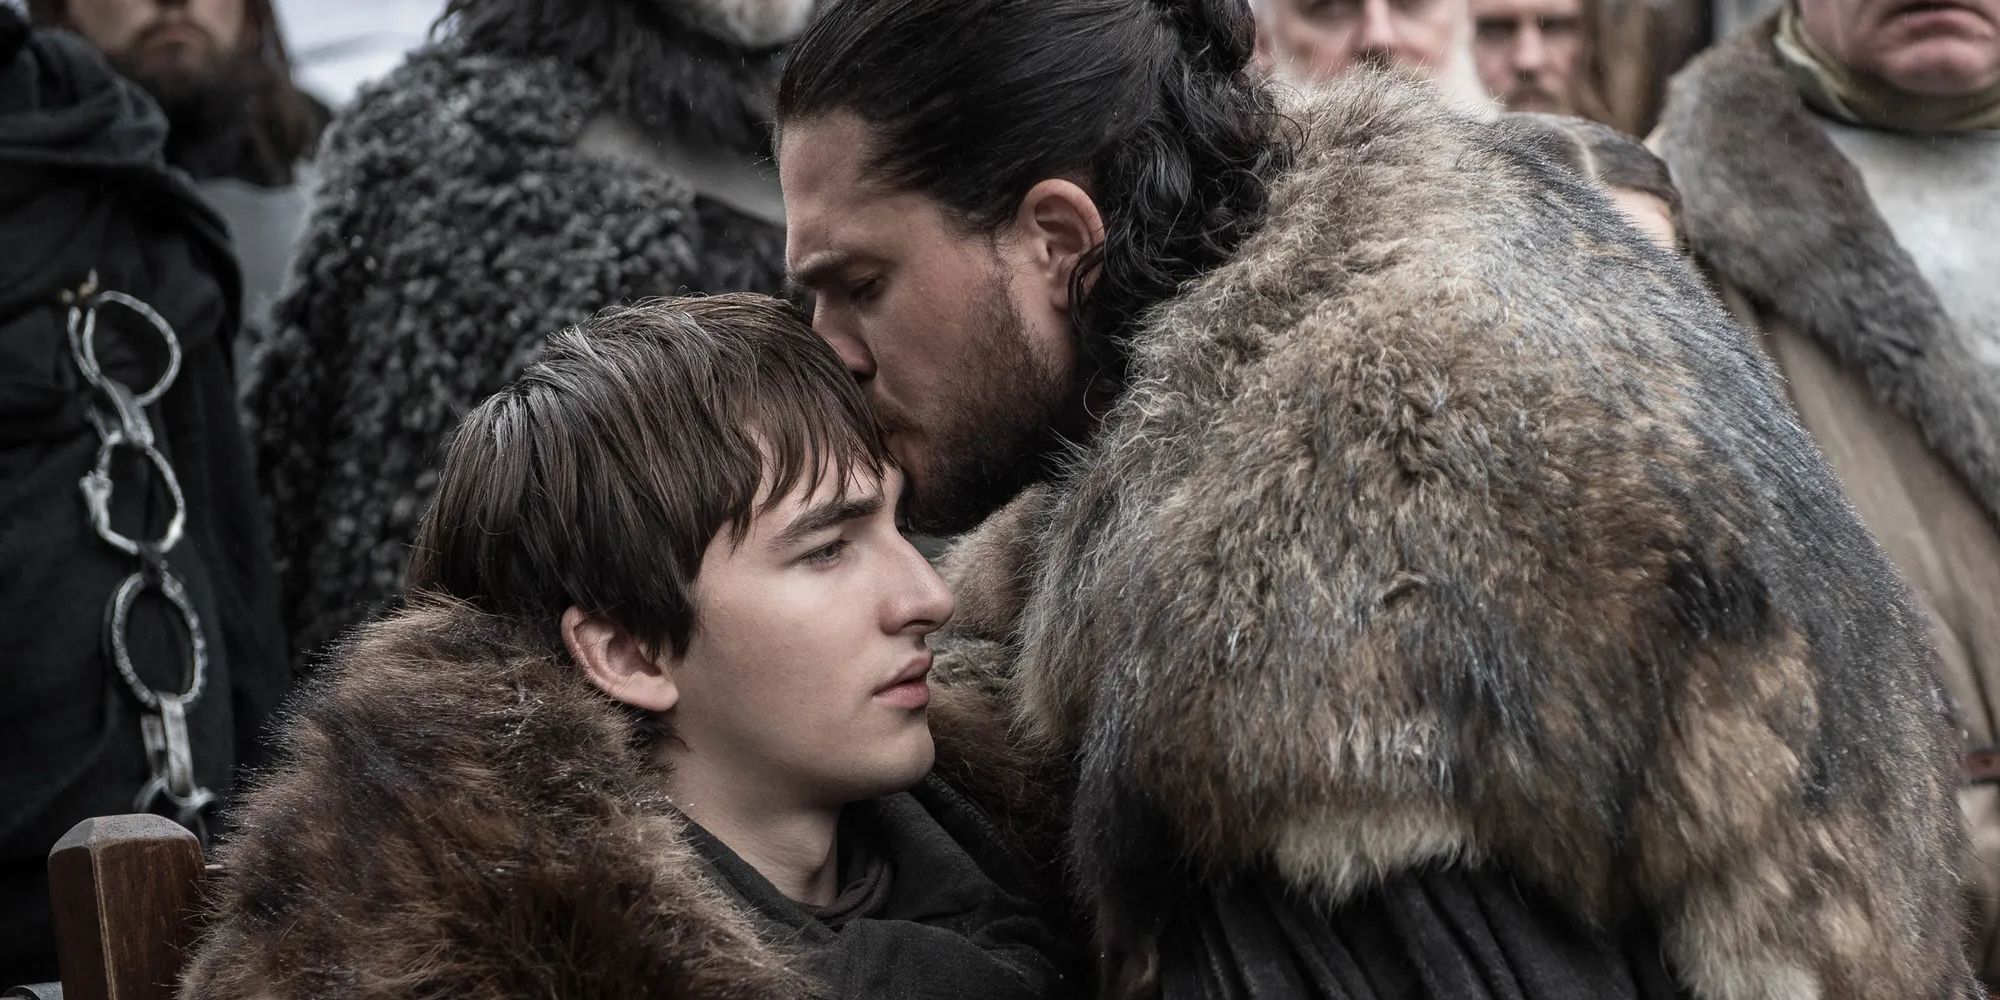 Jon Snow (Kit Harington) says goodbye to Bran (Isaac Hempstead Wright) in Game of Thrones